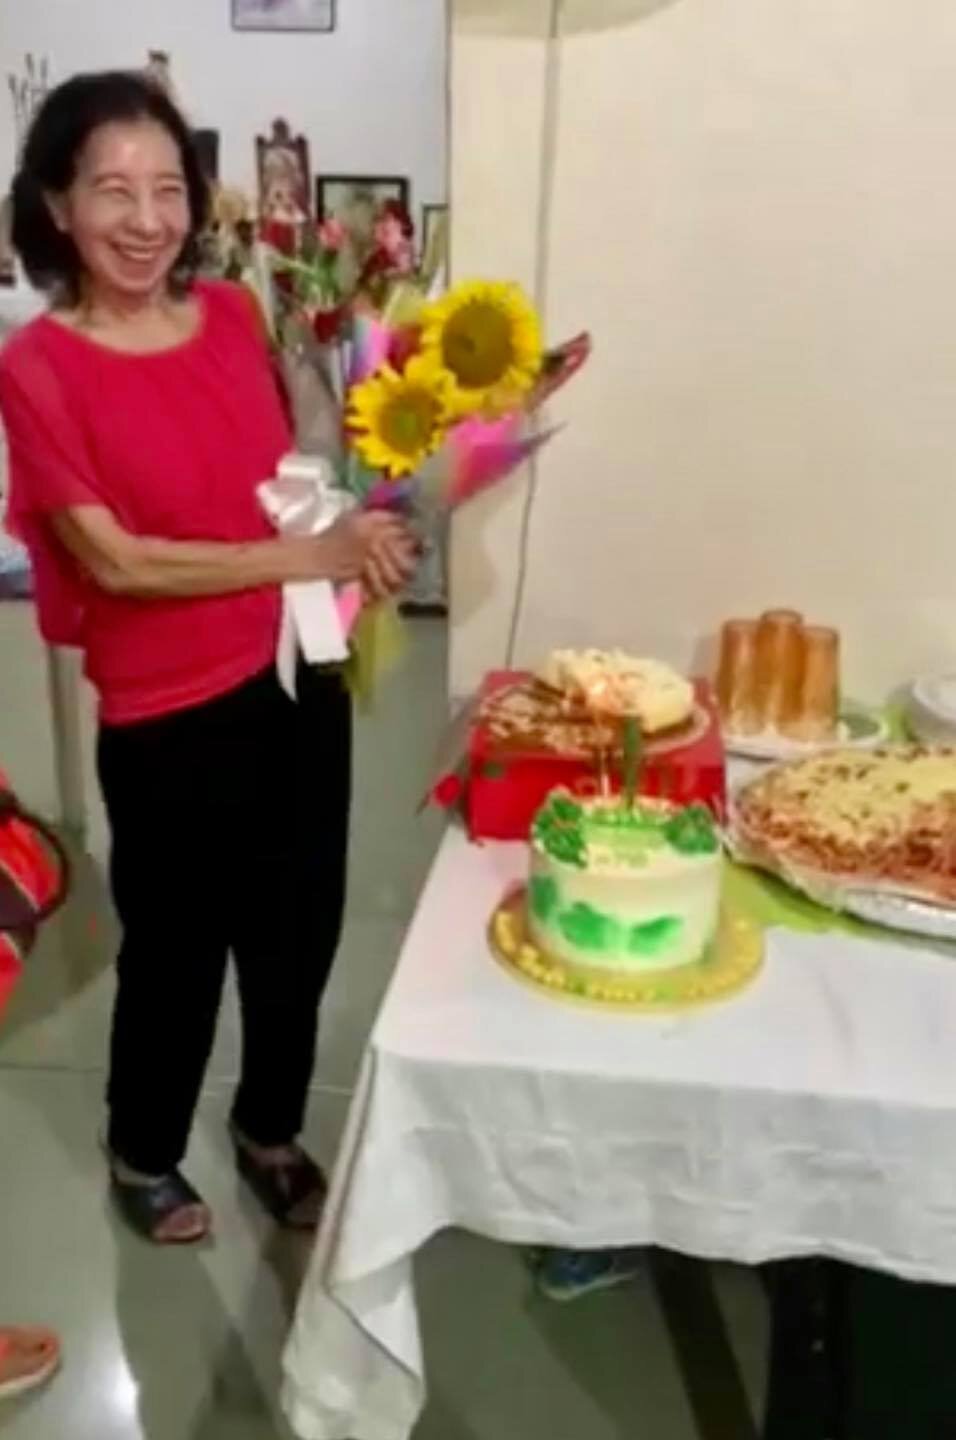 Filipino food to celebrate my grandma’s 79th birthday3.jpg